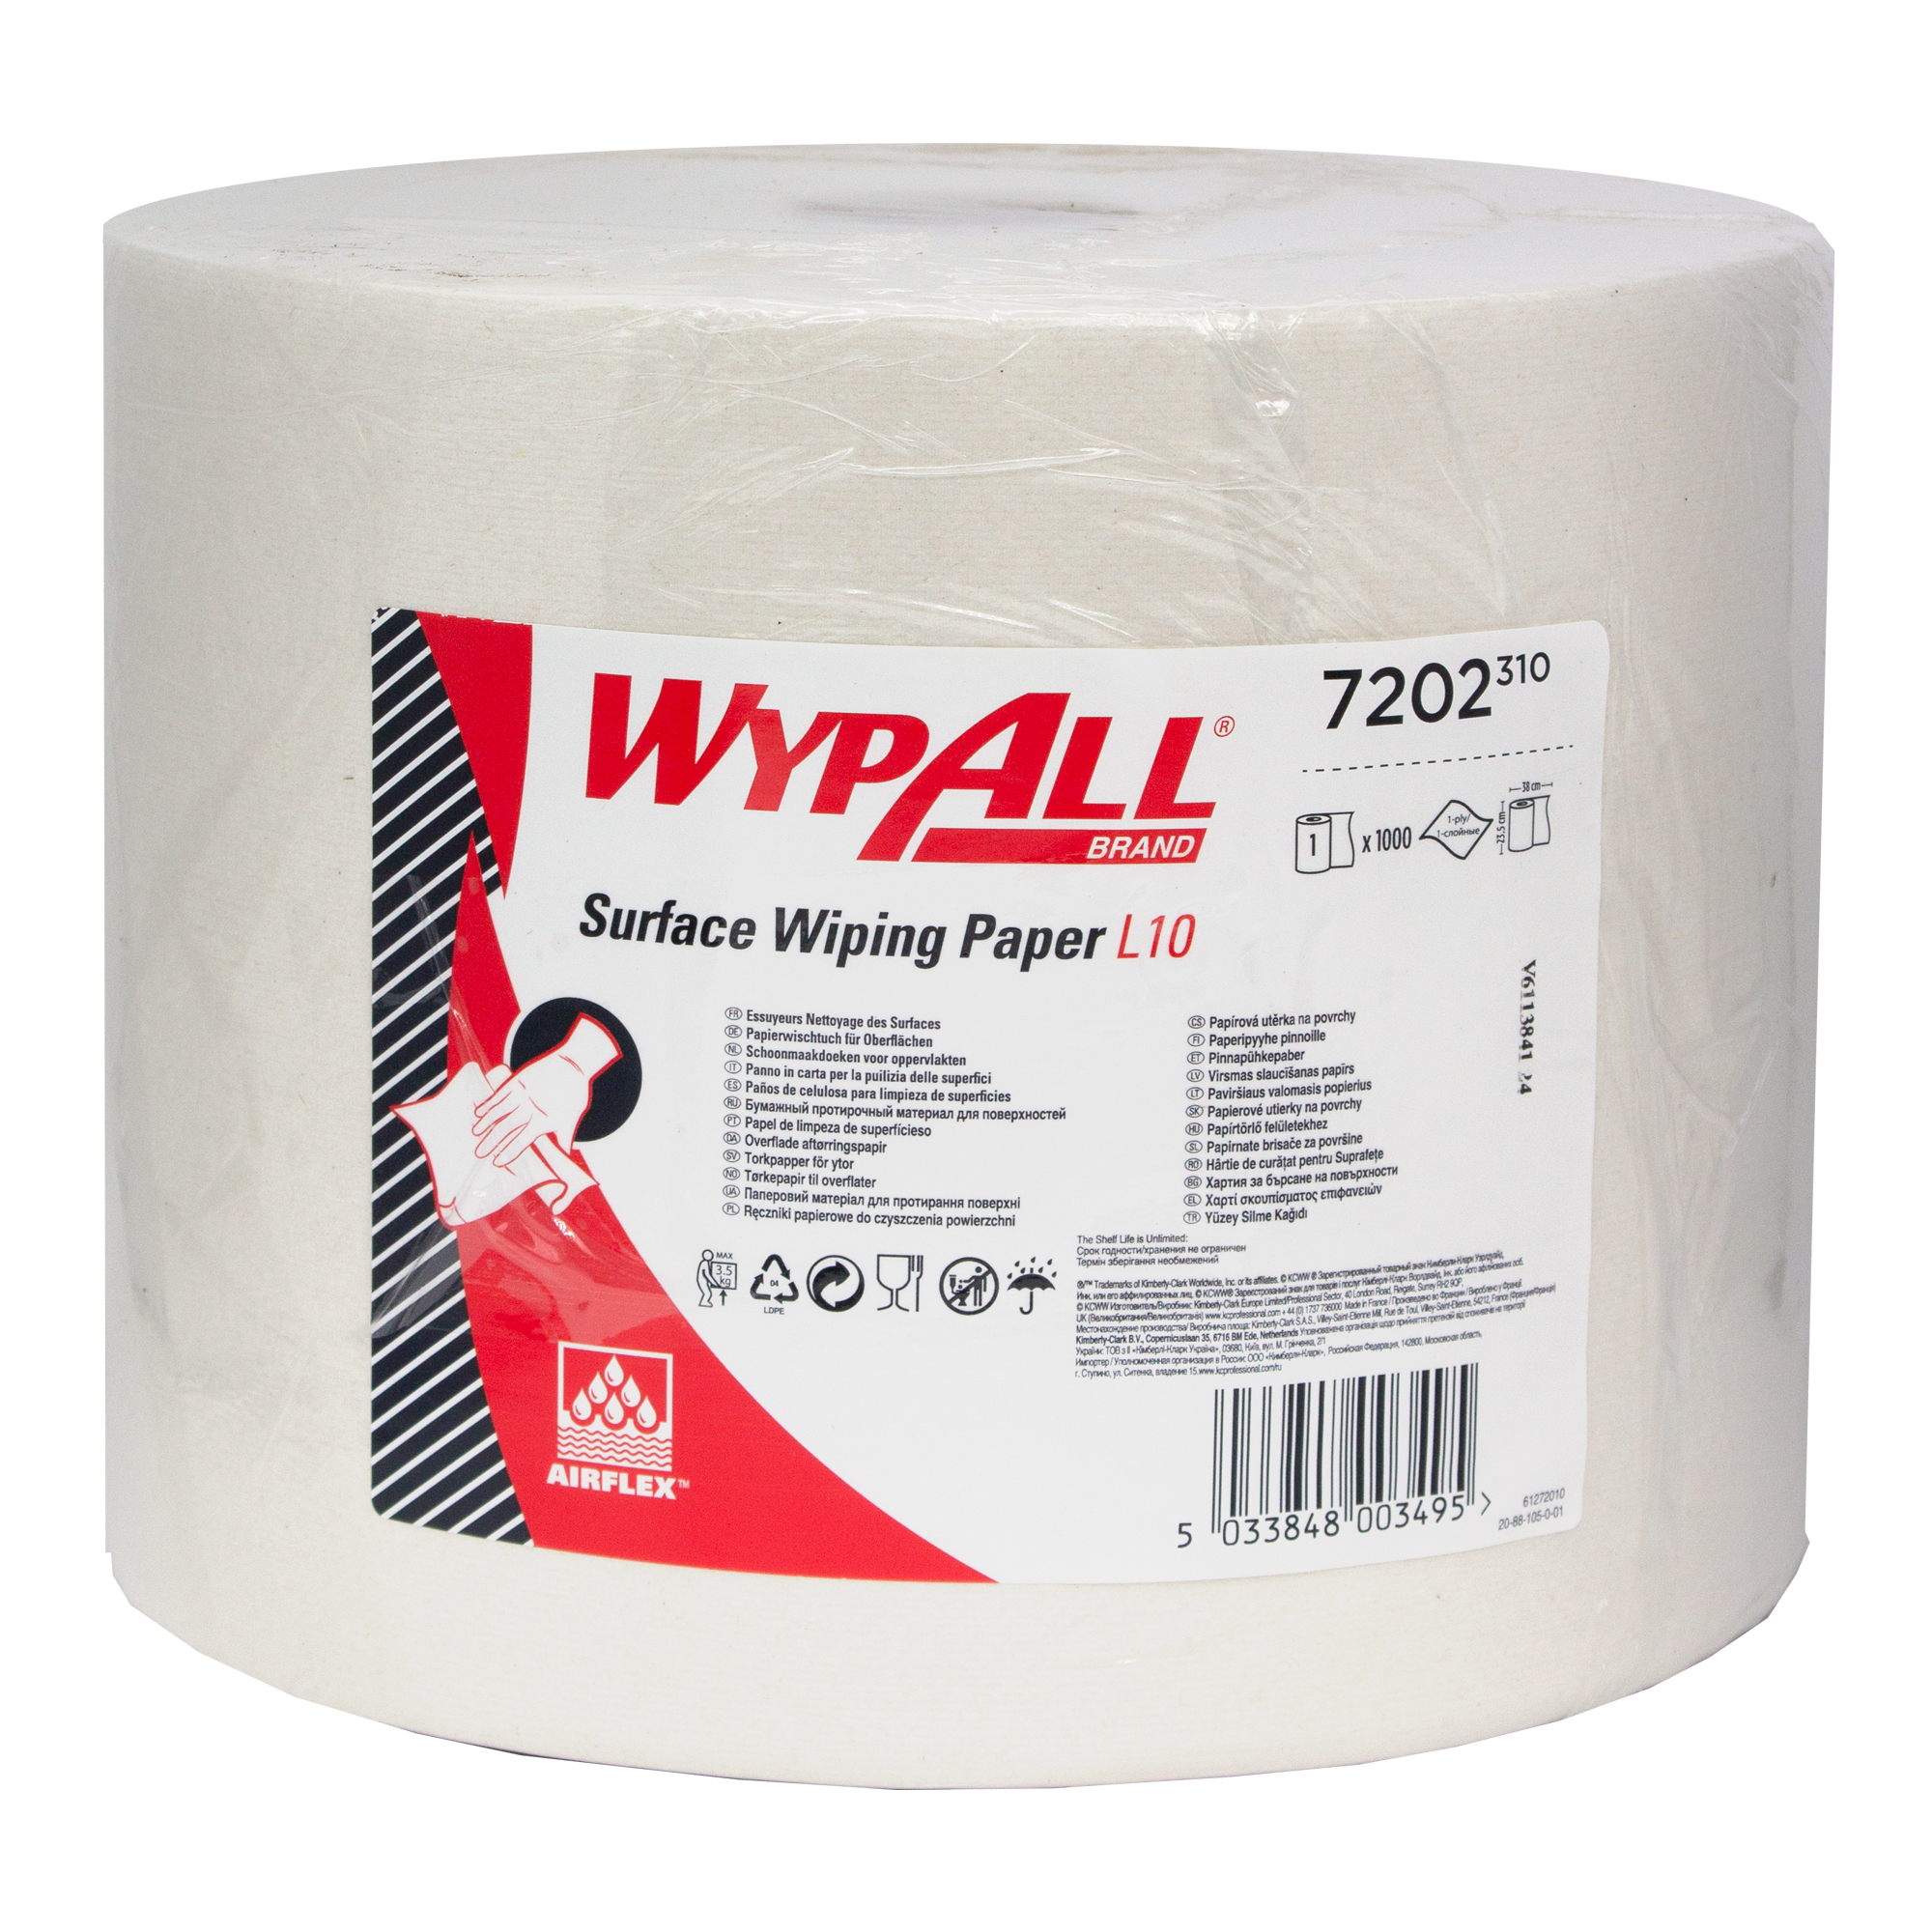 WypAll 7202 Papierwischtücher für Oberflächen Jumbo Großrolle L10 weiß 1-lagig, 23,5 cm breit, 1000 Tücher